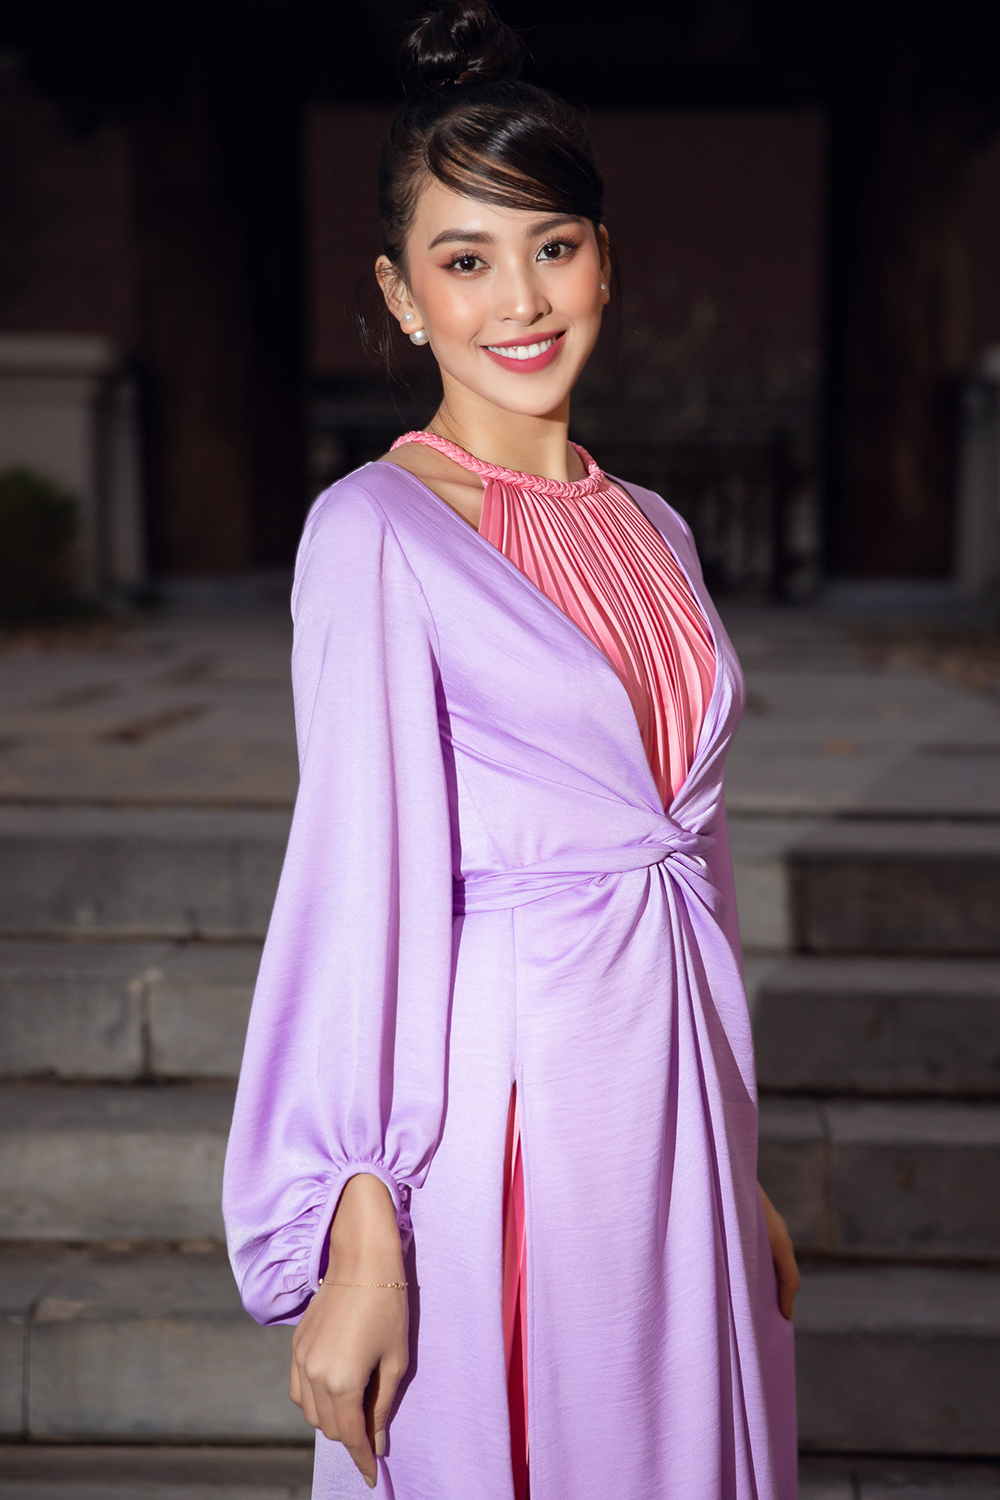 Hoa hậu Tiểu Vy rạng rỡ trong chiếc váy yếm lụa màu hồng phấn khoác ngoài là áo tứ thân cách điệu màu khoai môn nhẹ nhàng, trang nhã.